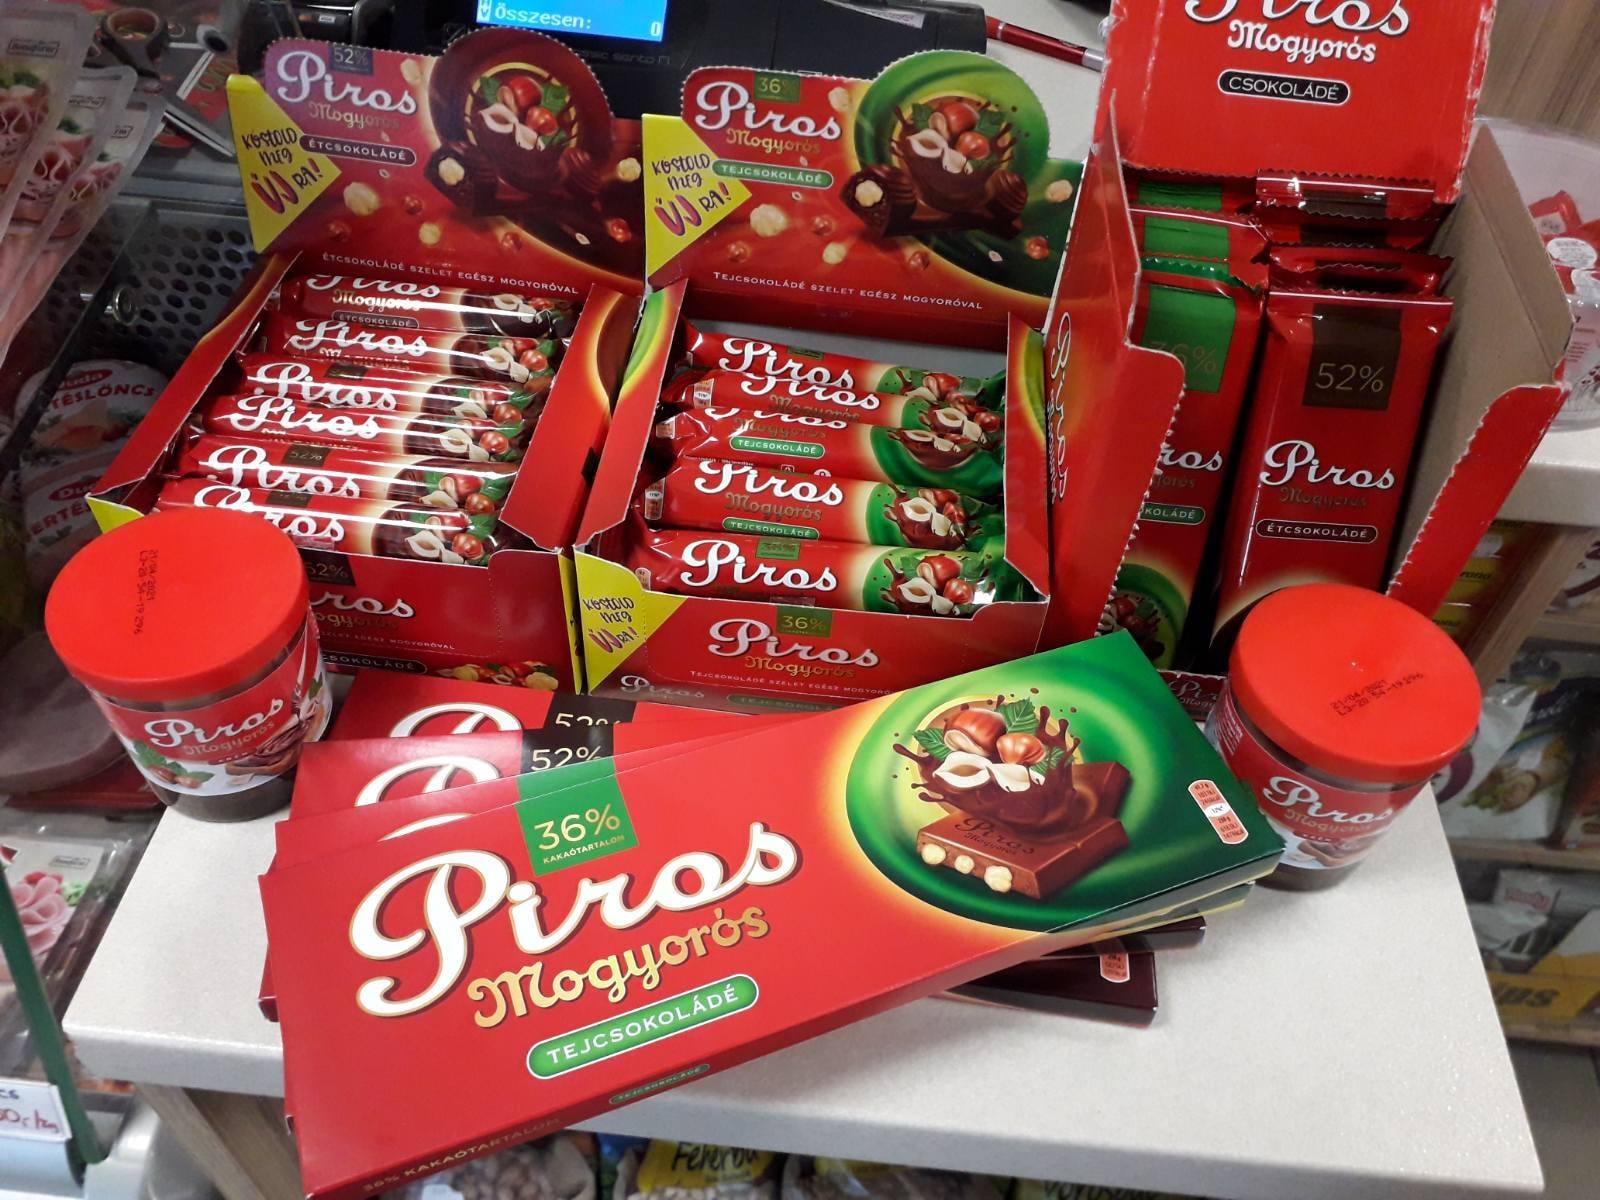 Piros mogyorós, chocolate, Hungary